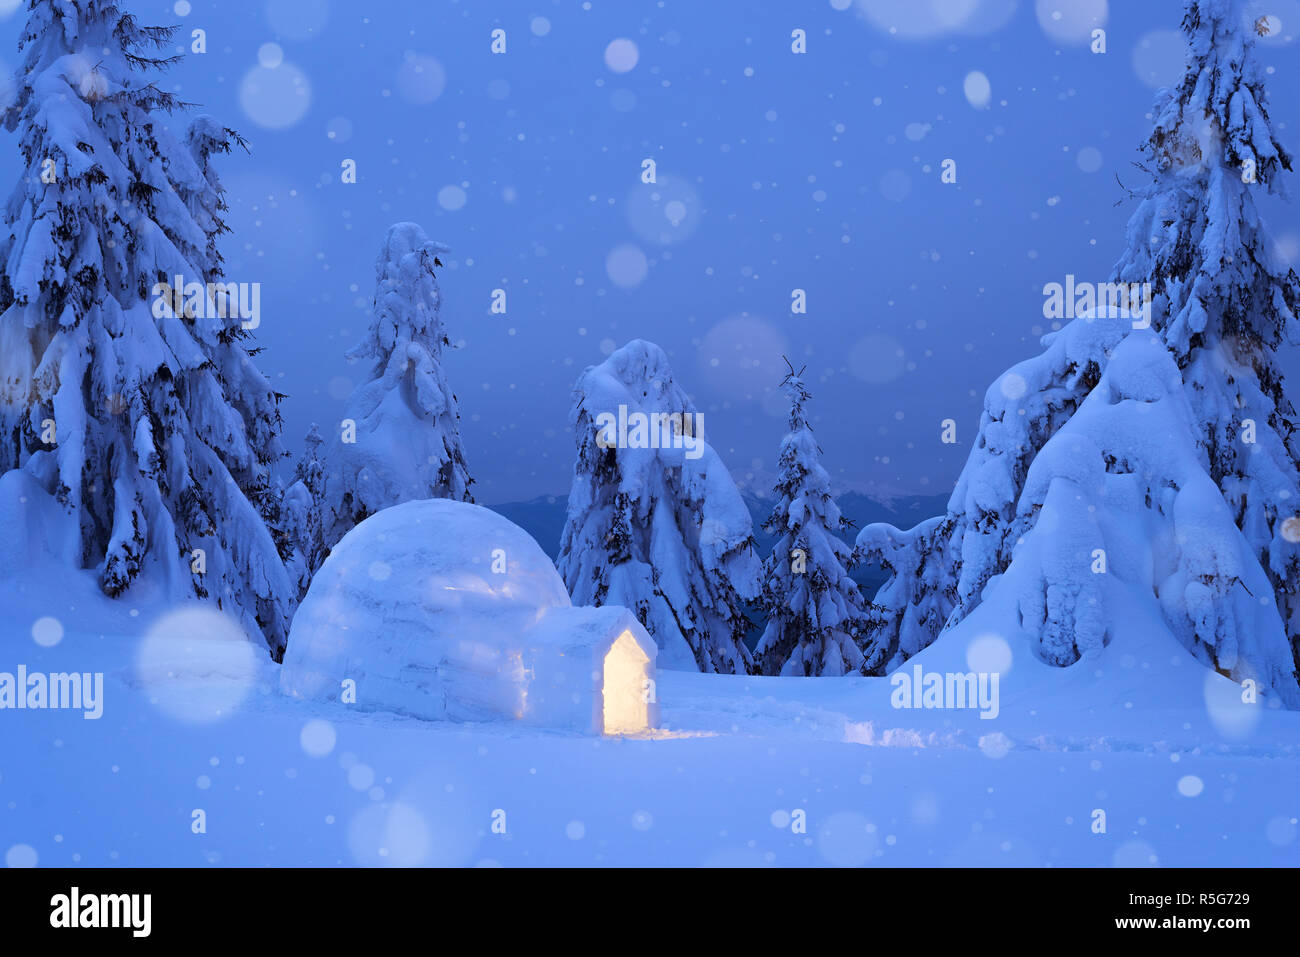 Escena de Invierno de ensueño con un iglú de nieve. Vista nocturna con abetos nevados y ventisquero. Las nevadas en un bosque de montaña Foto de stock